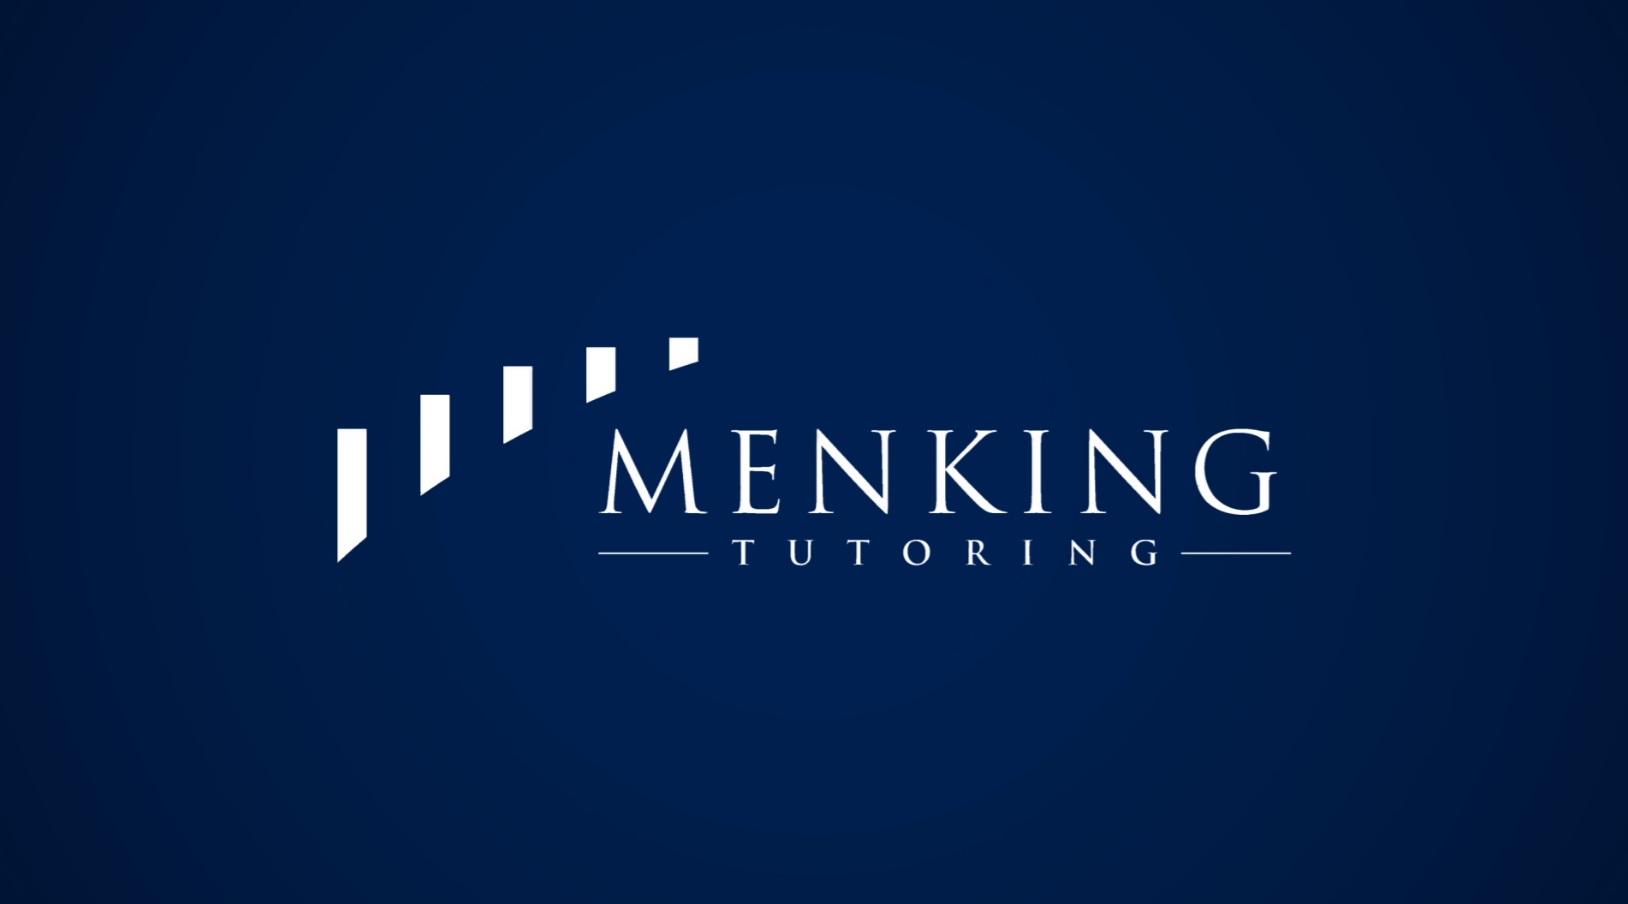 00-01 Welcome To Menking Tutoring...